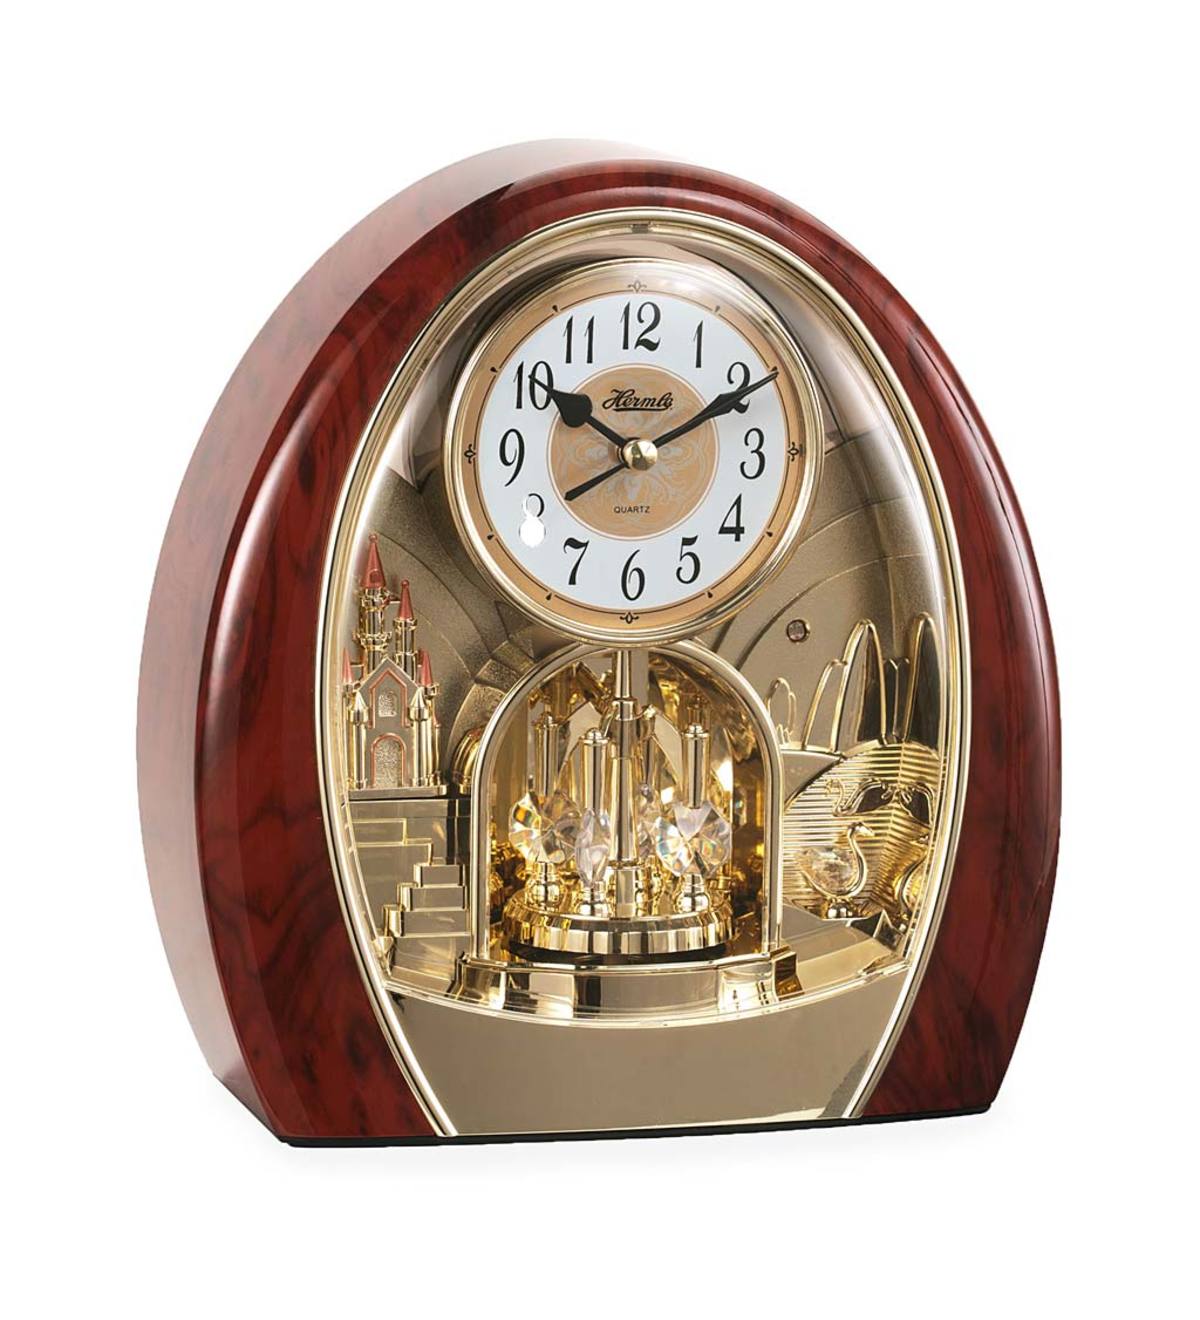 Настенные часы hermle. Часы Hermle Quartz. Hermle часы настенные. Часы Hermle 24 часа. Часы Hermle настенные кварцевые.